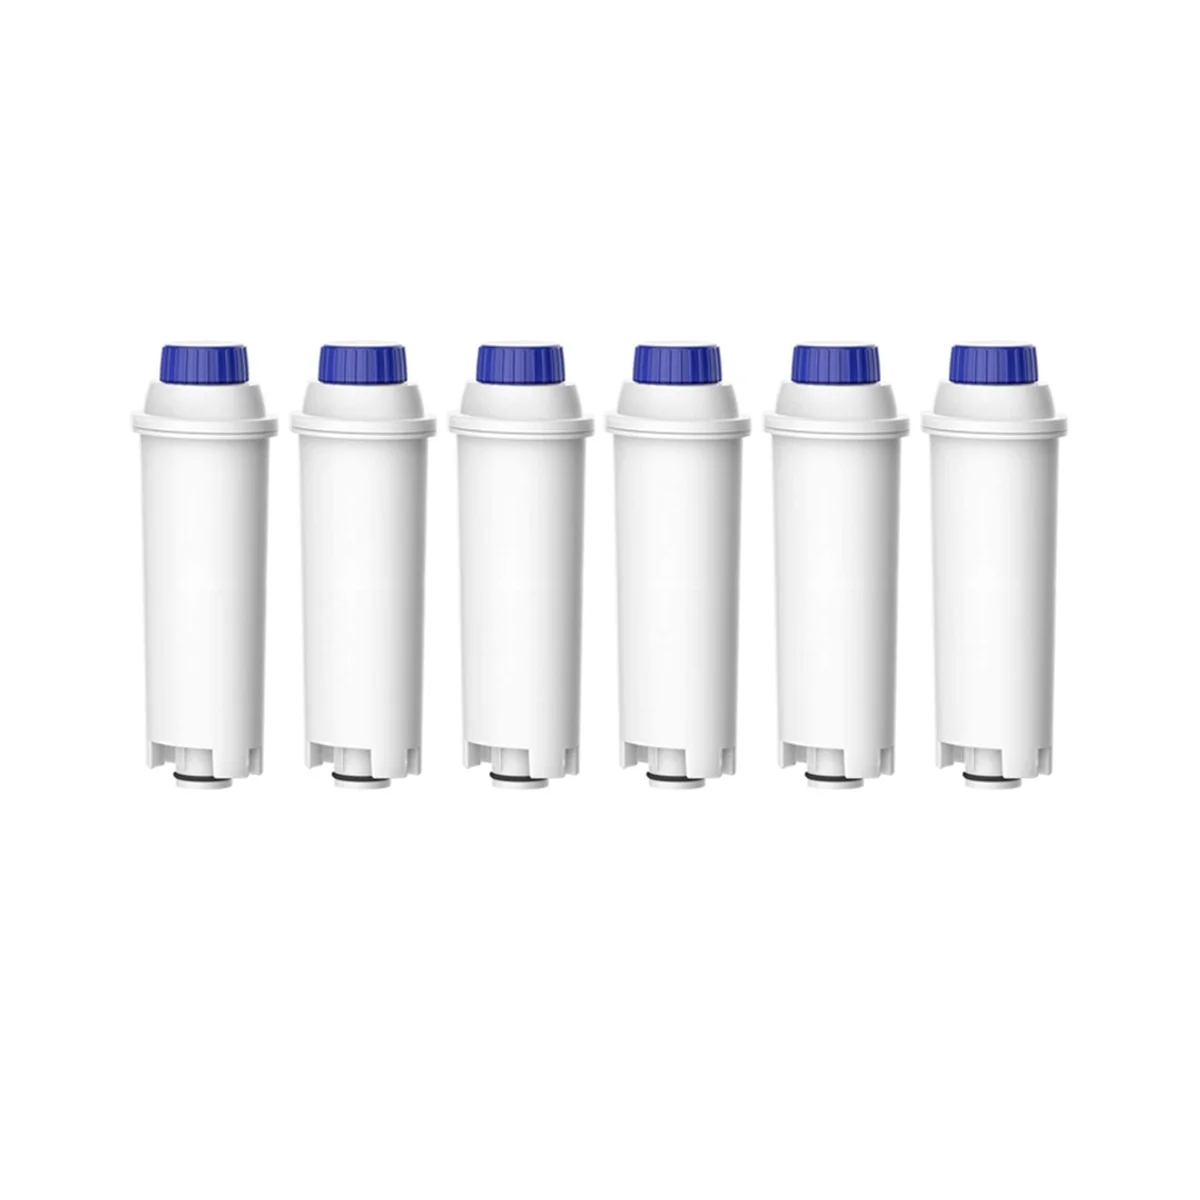  Фильтр для мягкой воды для кофемашины Фильтрация воды для DLS C002, DLSC002, CFL950, SER3017, ECAM / ESAM / Series-B